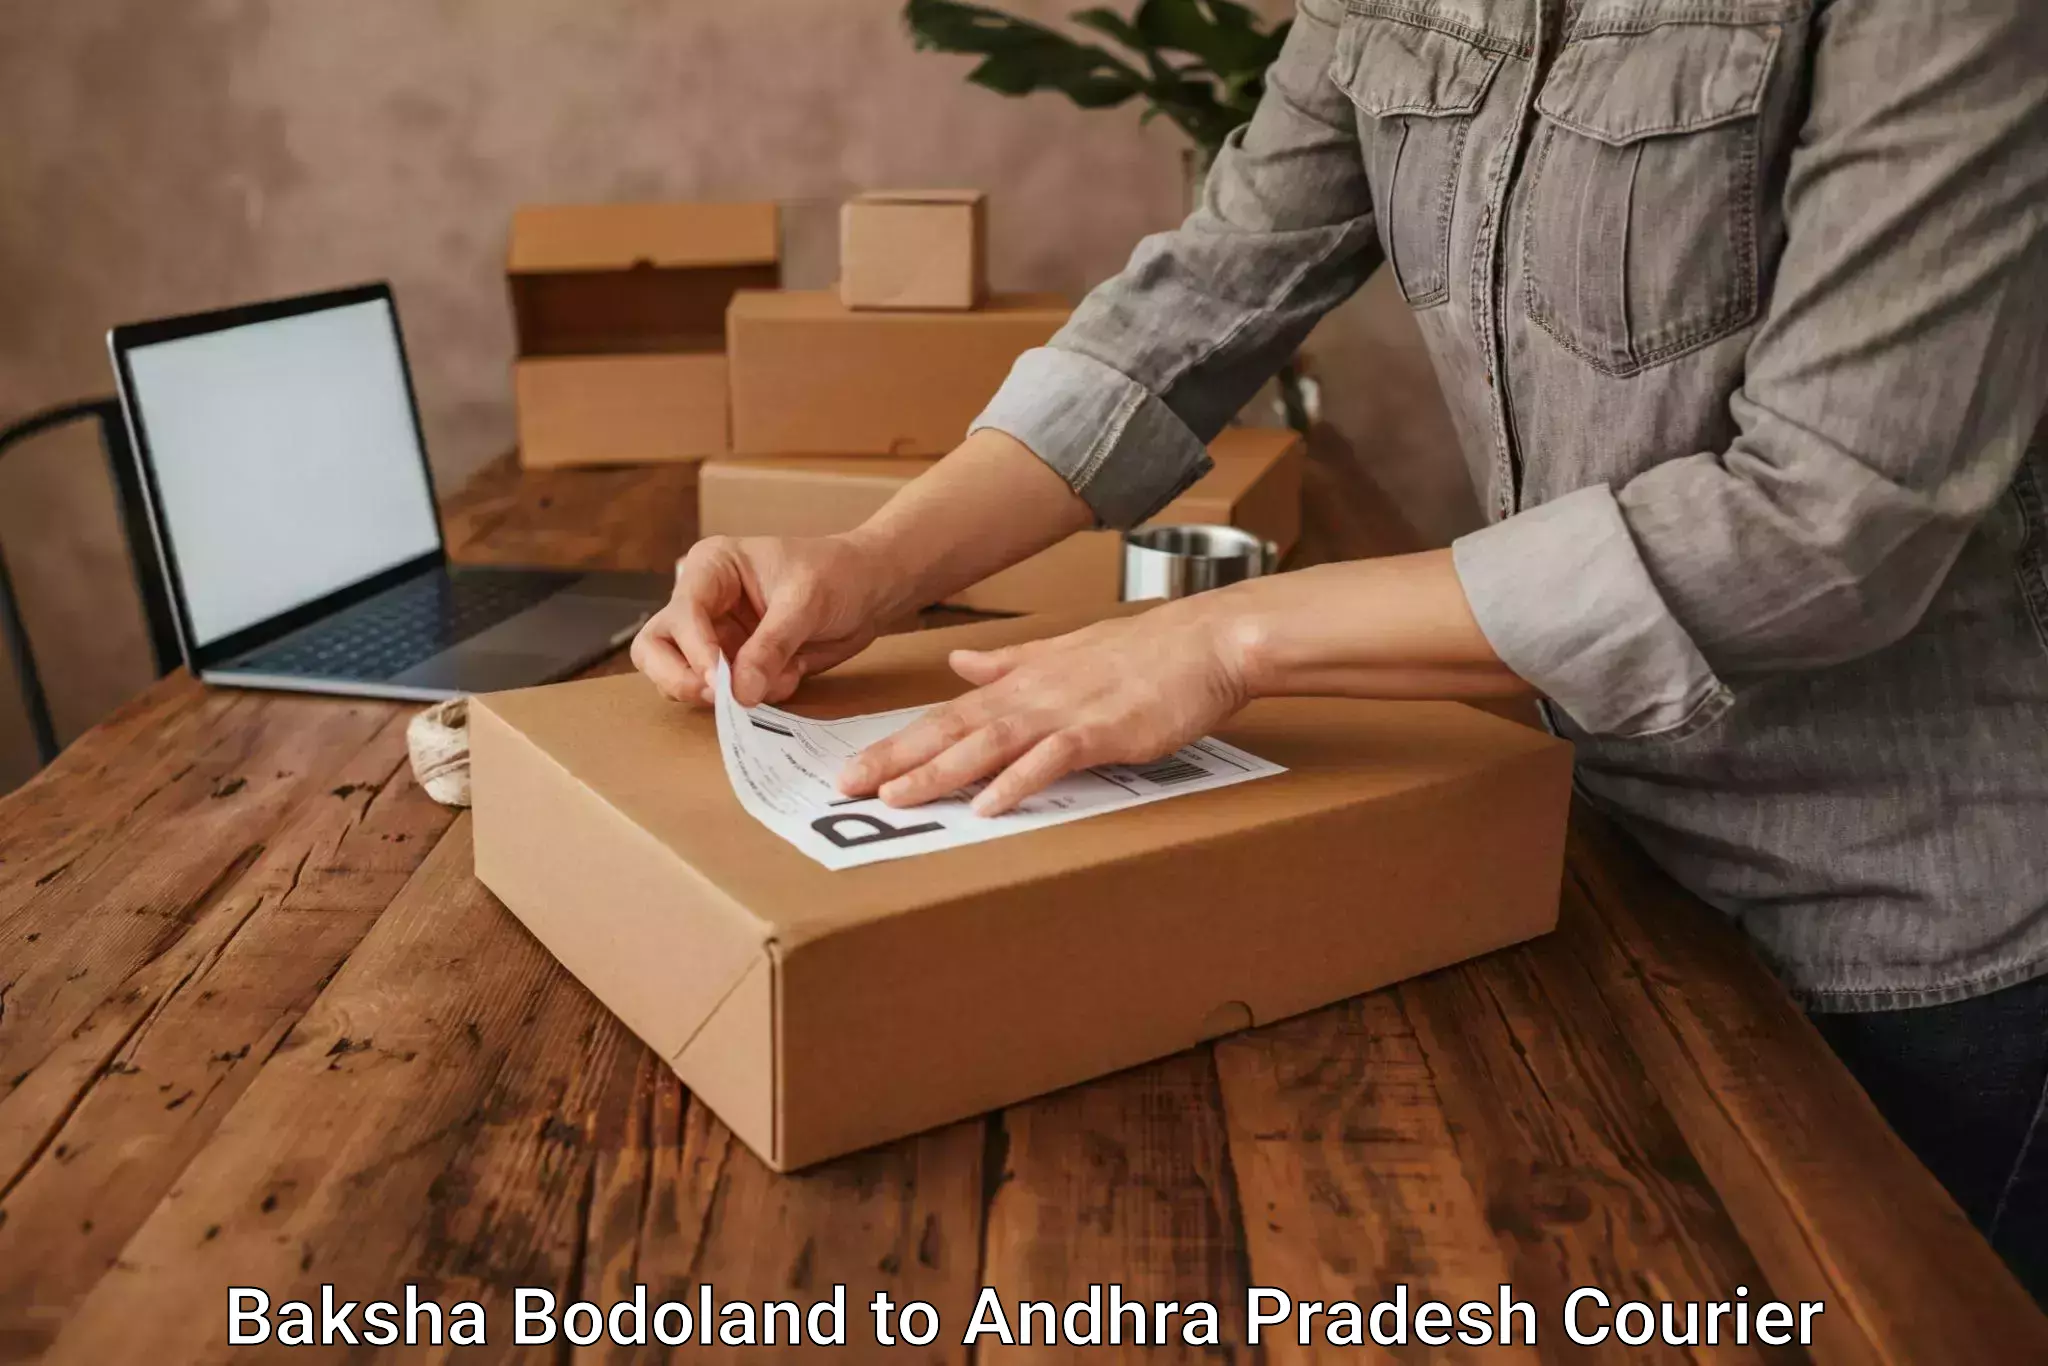 User-friendly courier app Baksha Bodoland to West Godavari